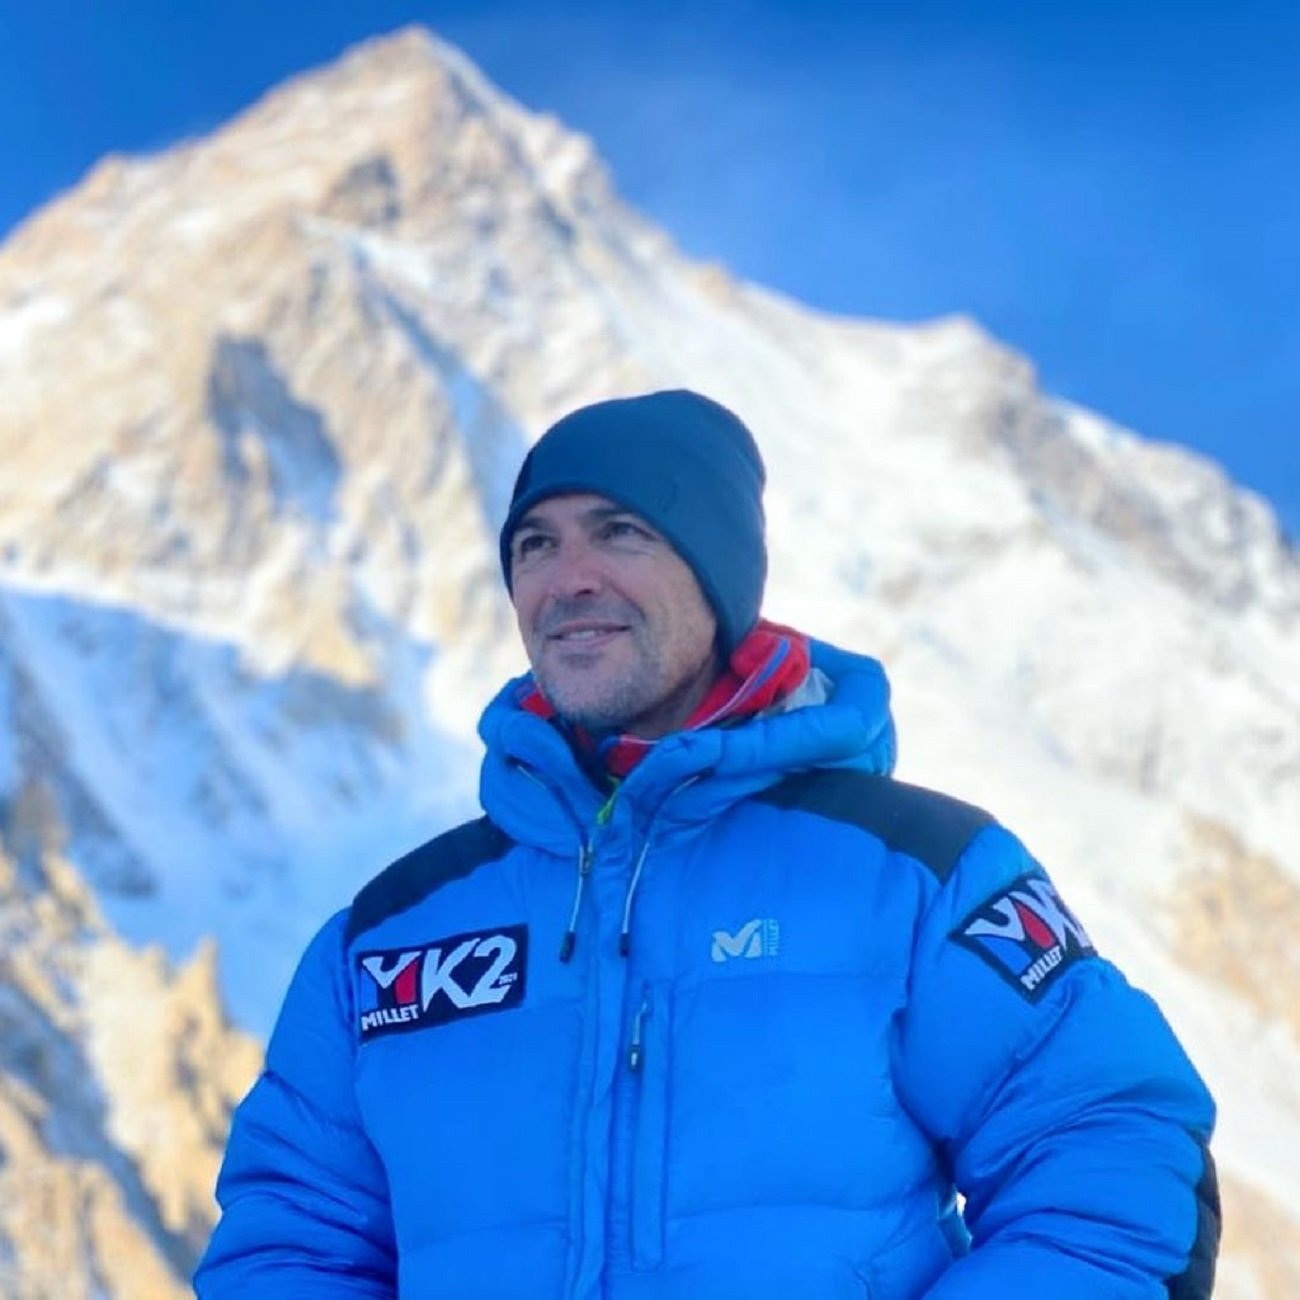 Allau de reaccions després de la mort de Sergi Mingote al K2